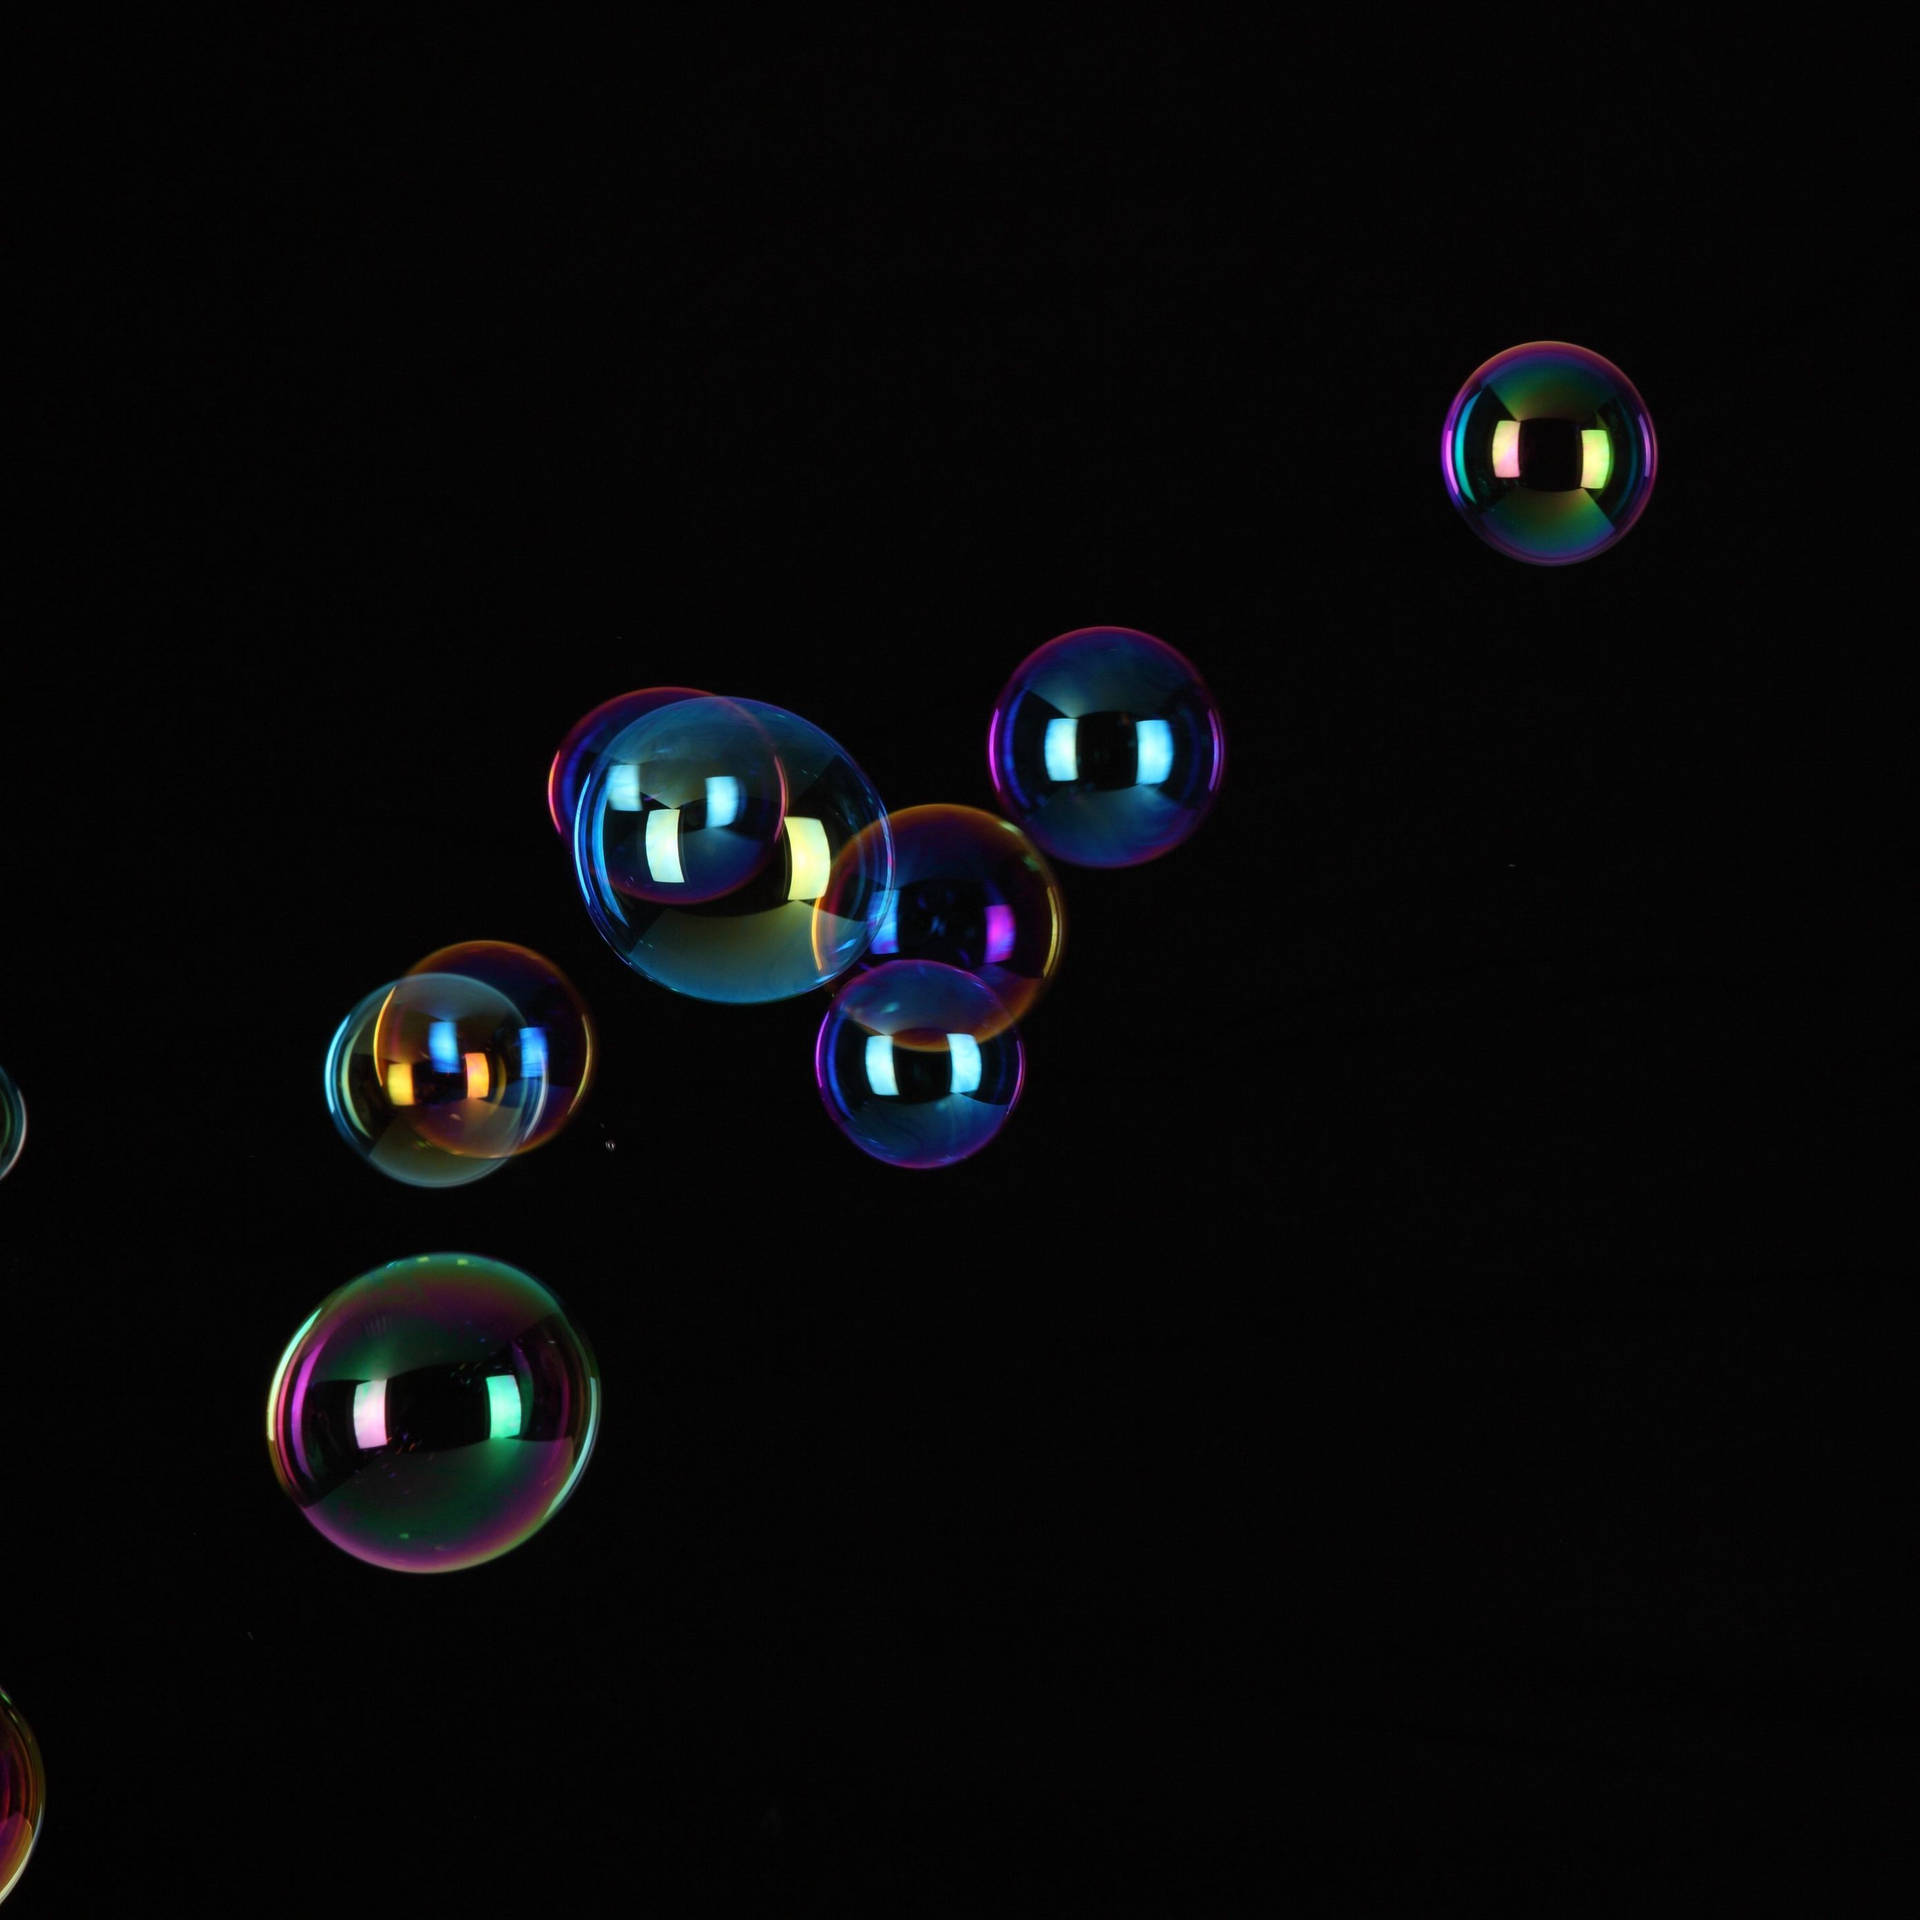 Ipad Pro Floating Bubbles On Black Background